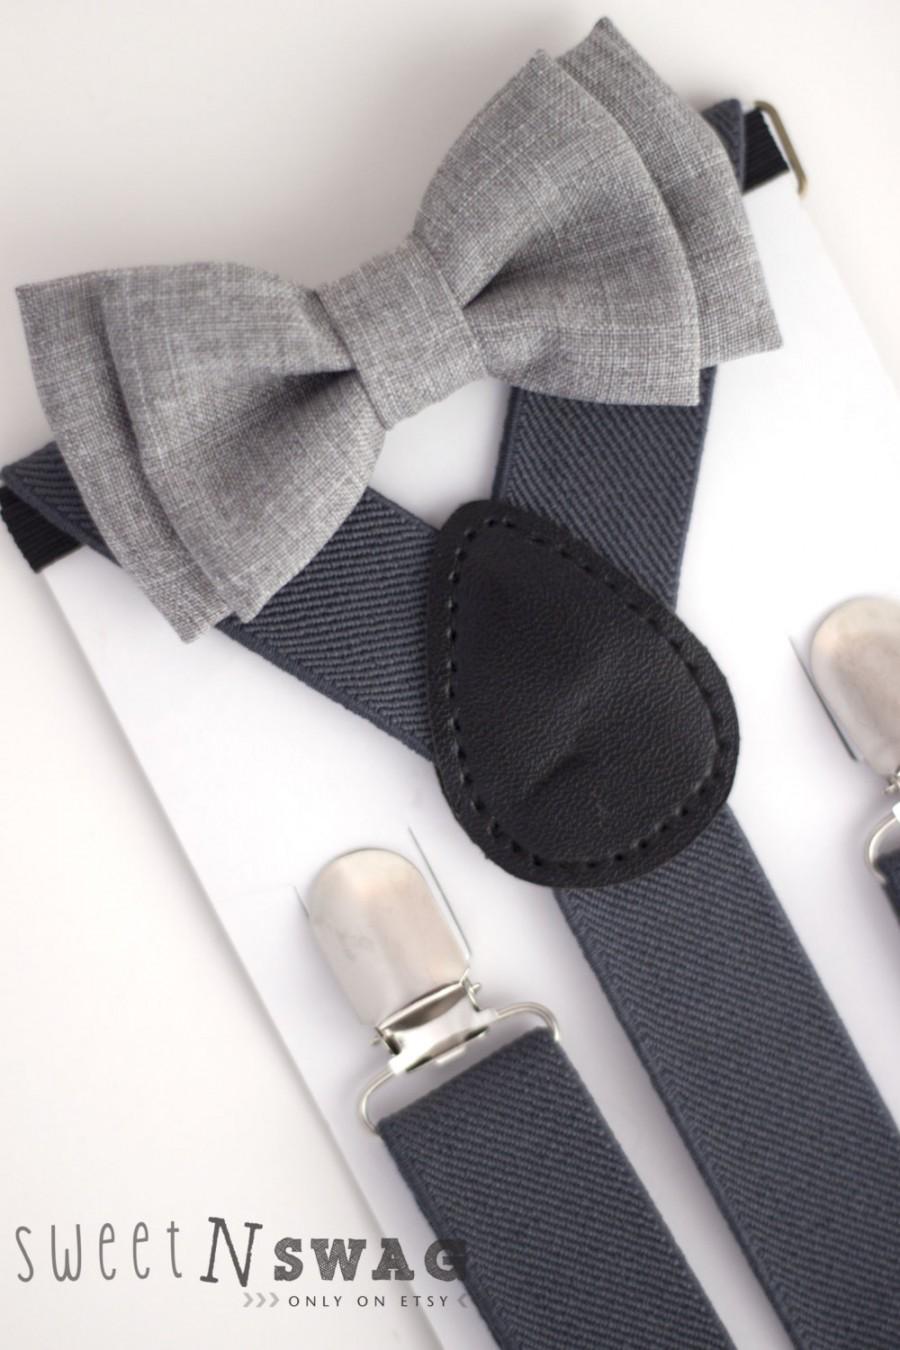 Mariage - SUSPENDER & BOWTIE SET.  Newborn - Adult sizes. Dark Grey / Gray Suspenders. Light grey chambray bowtie.